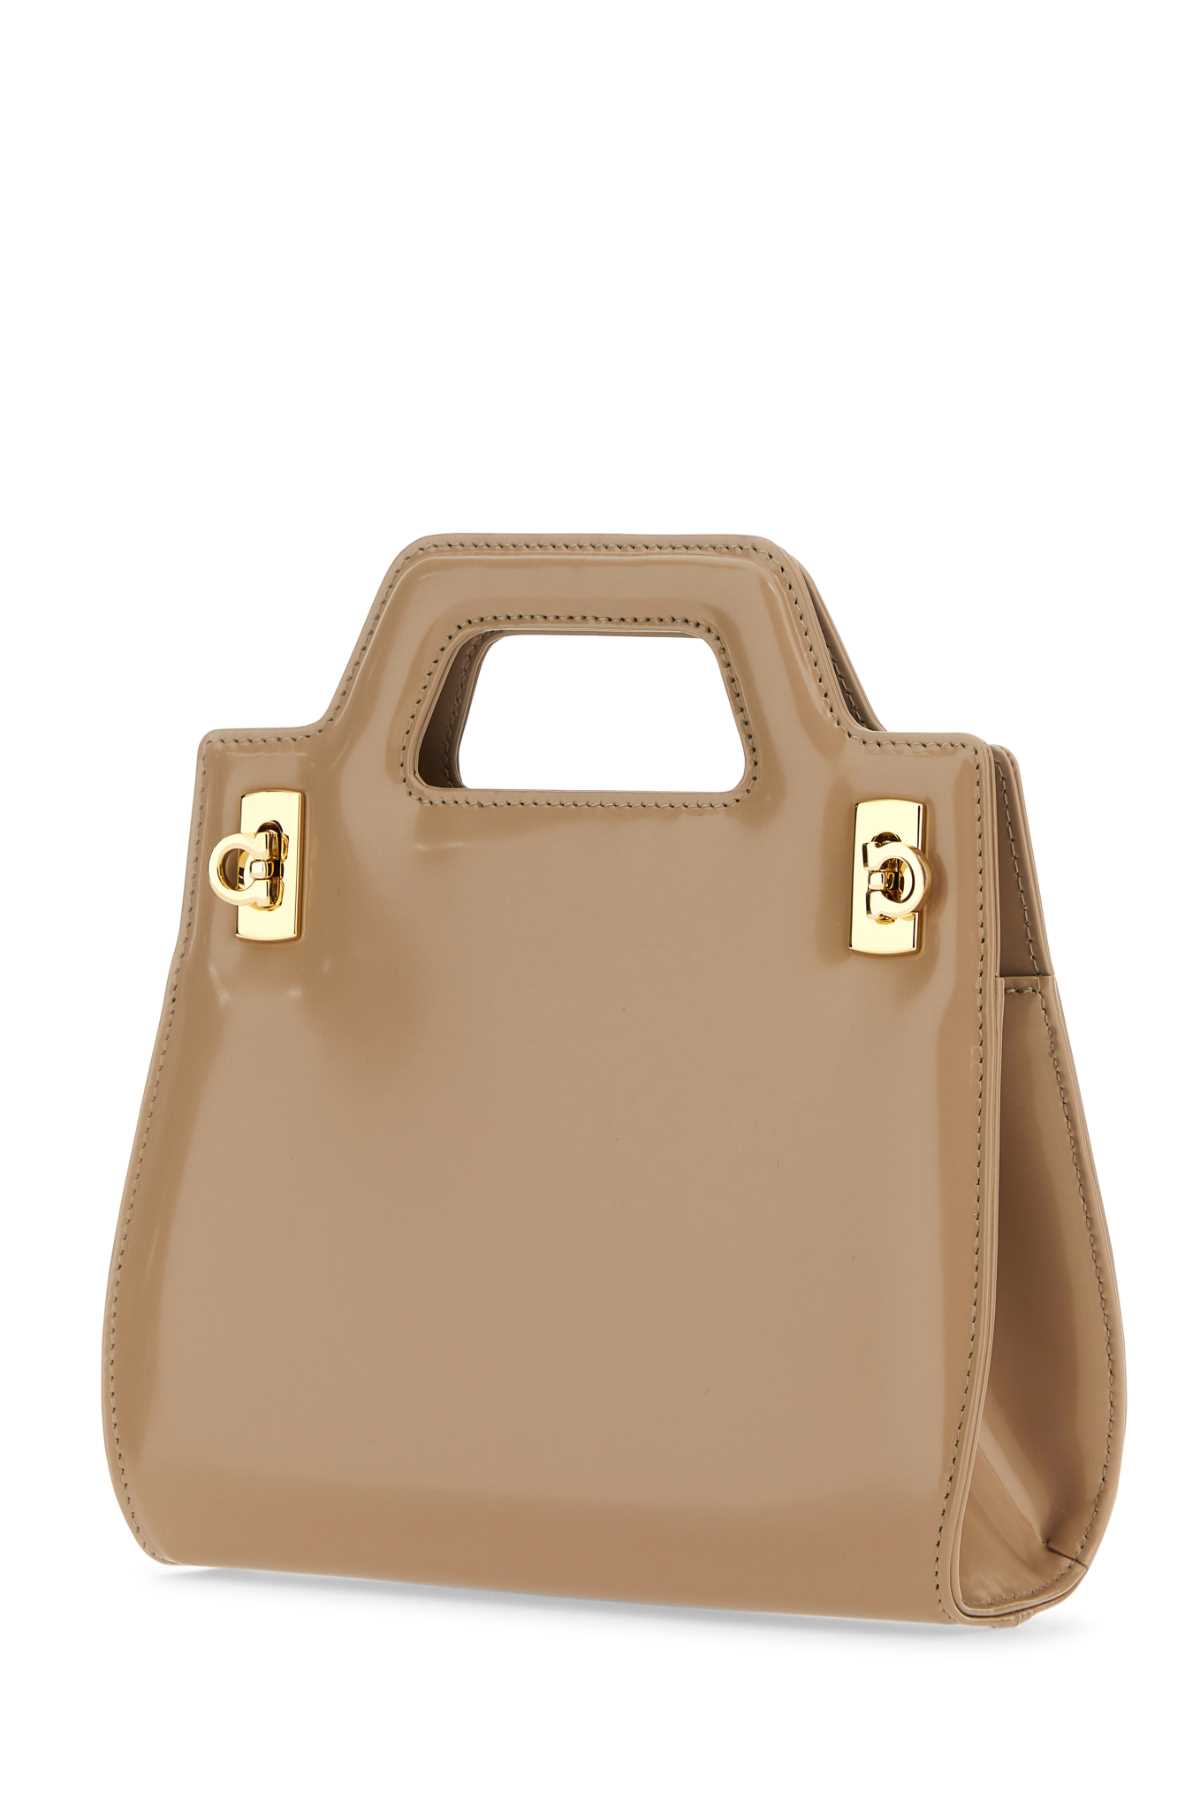 Shop Ferragamo Beige Leather Mini Wanda Handbag